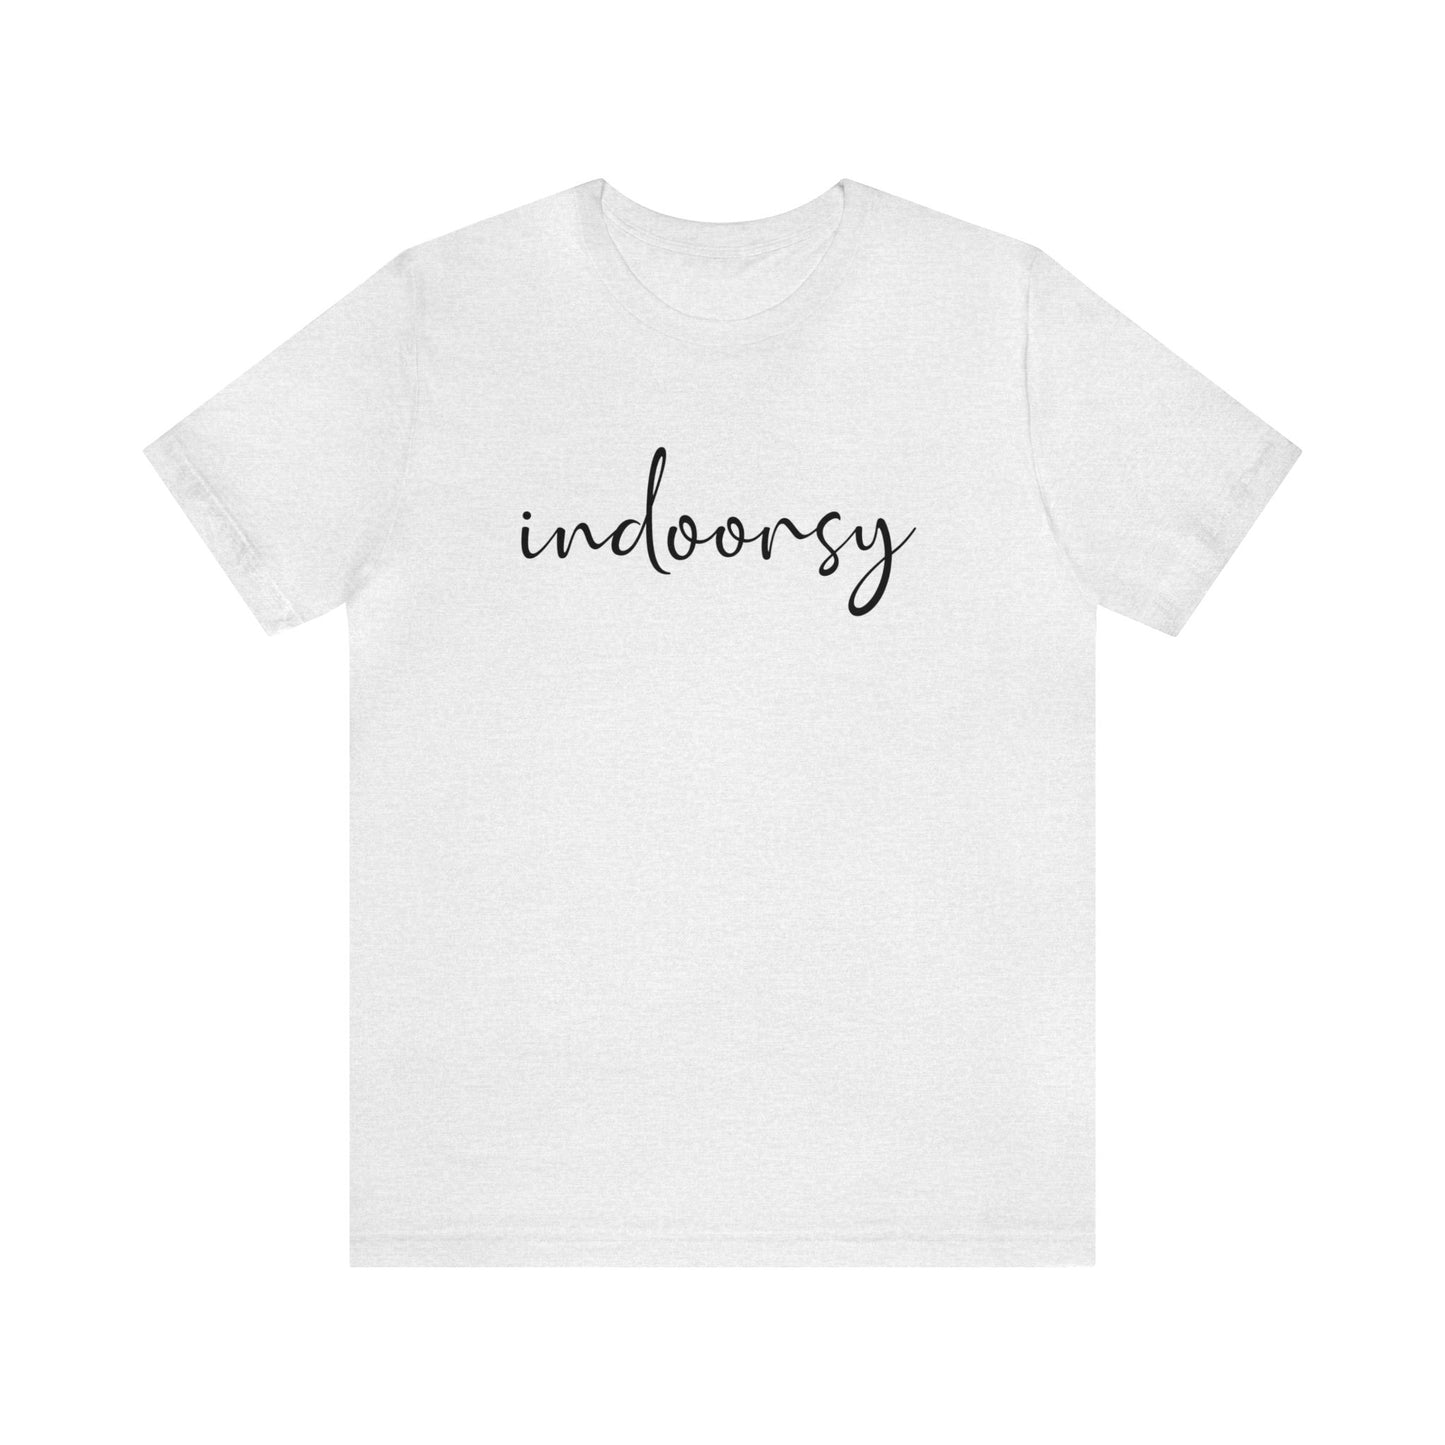 Indoorsy Funny Tshirt